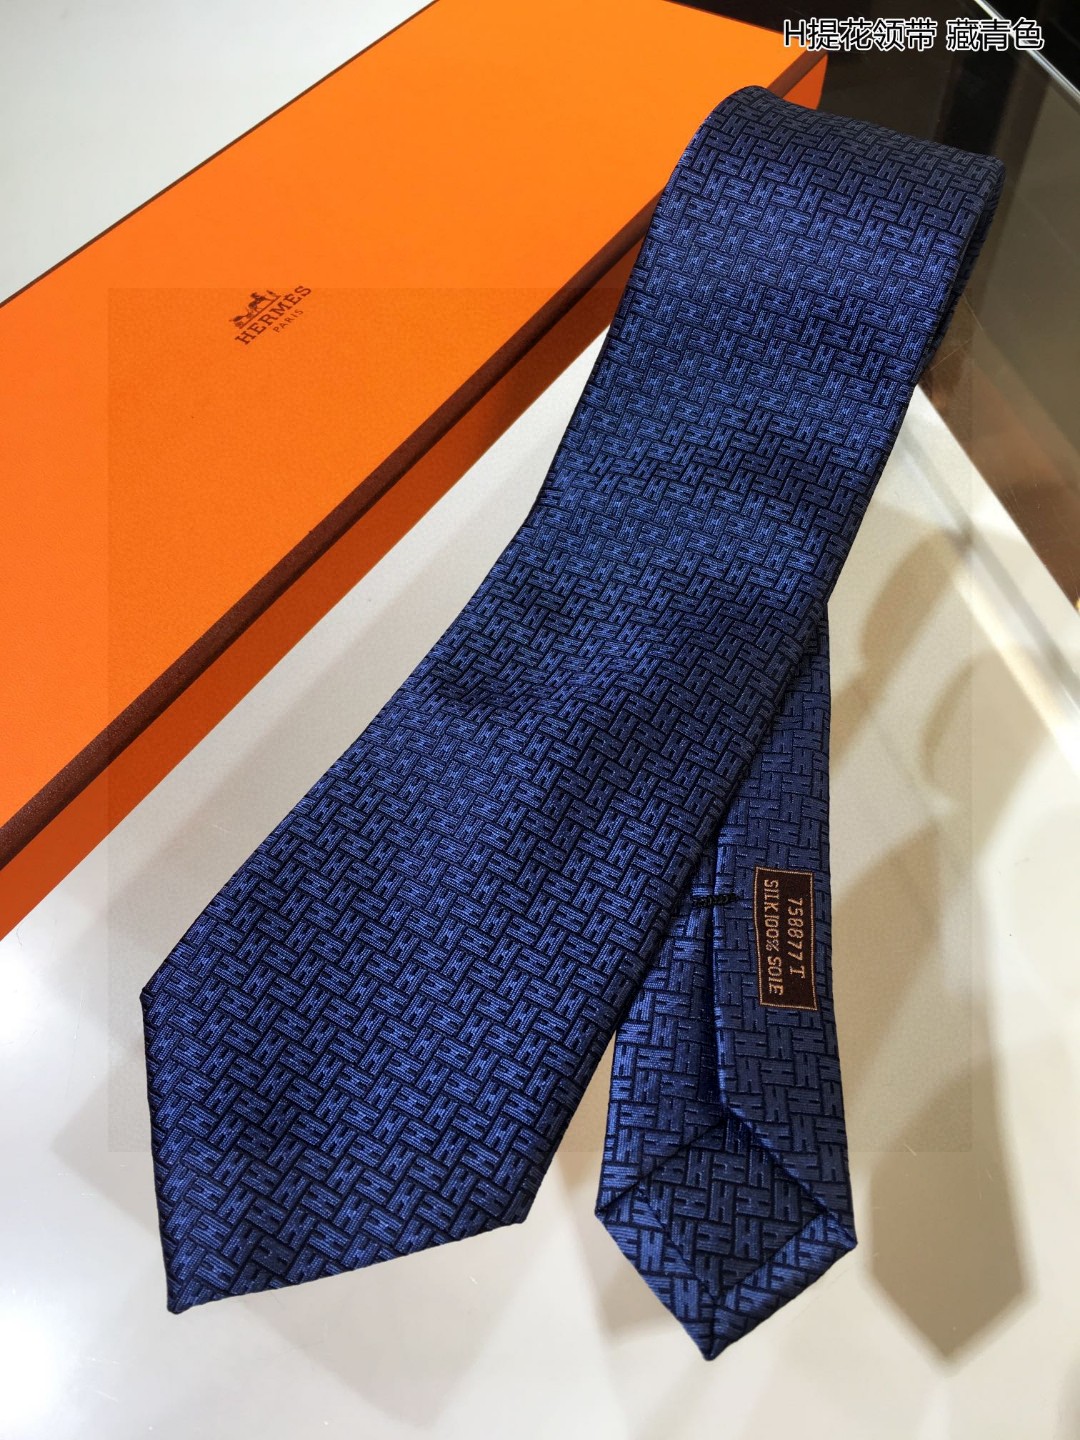 特价男士新款领带系列H提花领带稀有H家每年都有一千条不同印花的领带面世从最初的多以几何图案表现骑术活动为